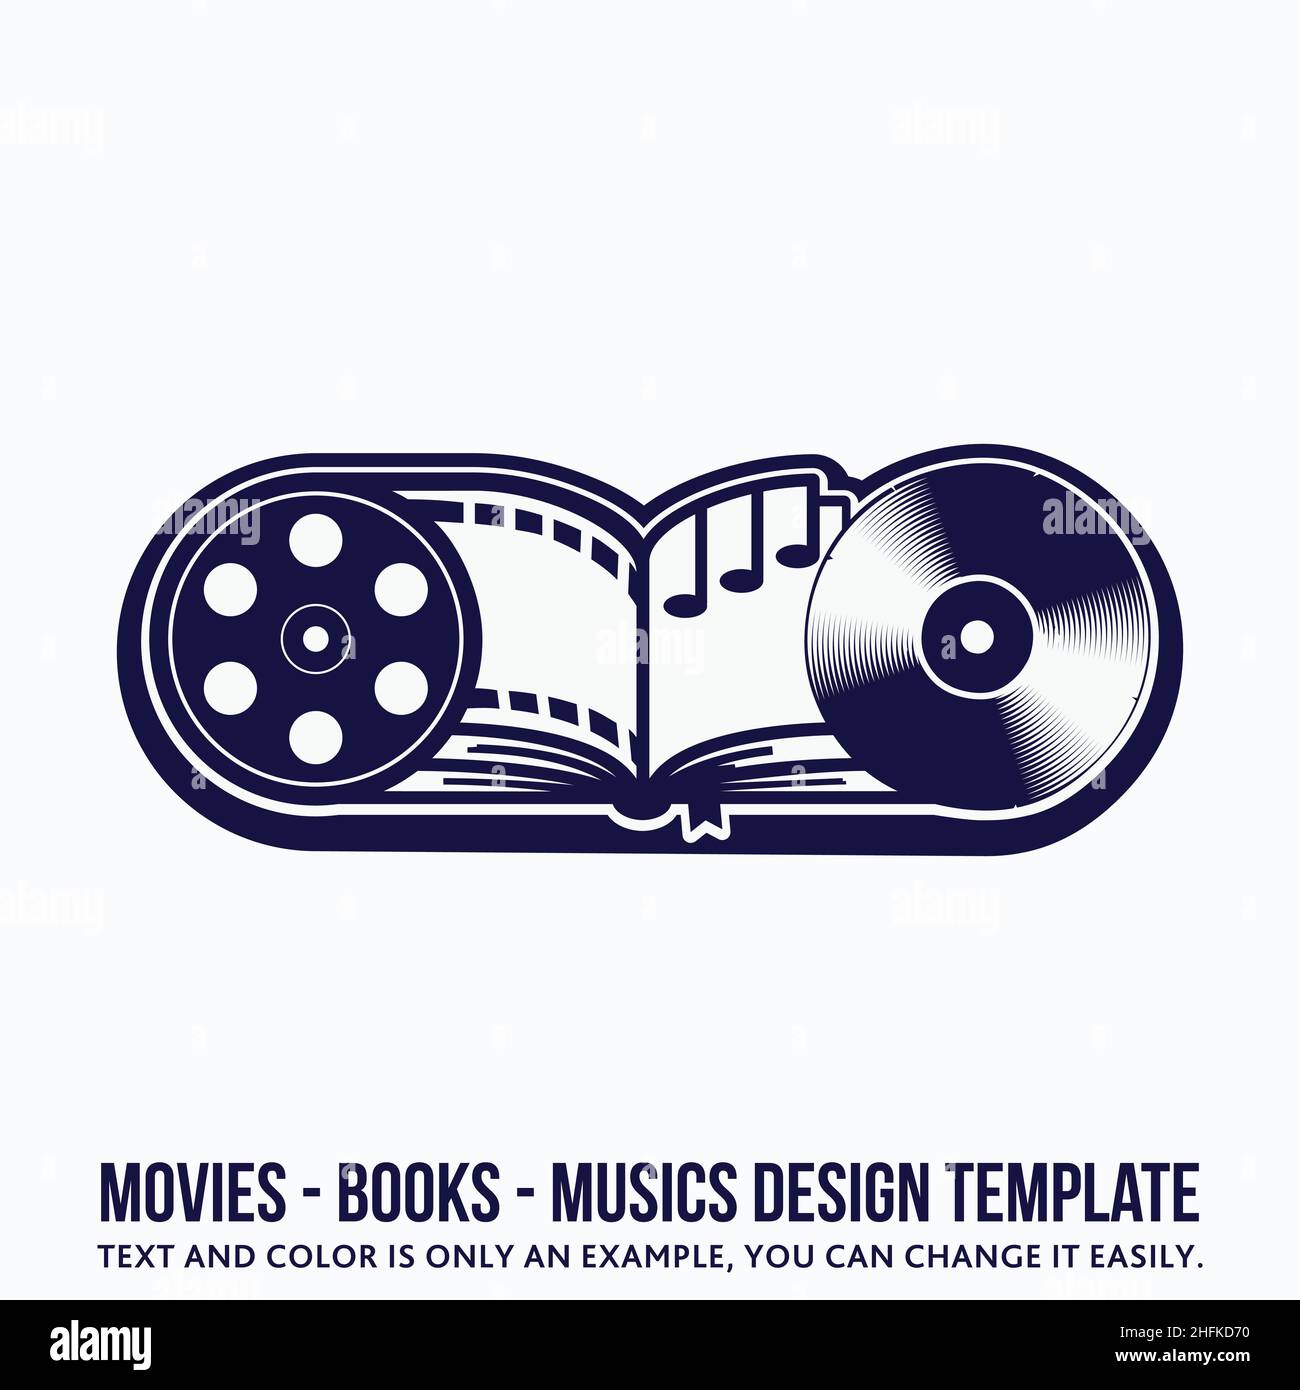 Design-Vorlage für Musik, Bücher, Filme. Vektor und Illustration. Stock Vektor